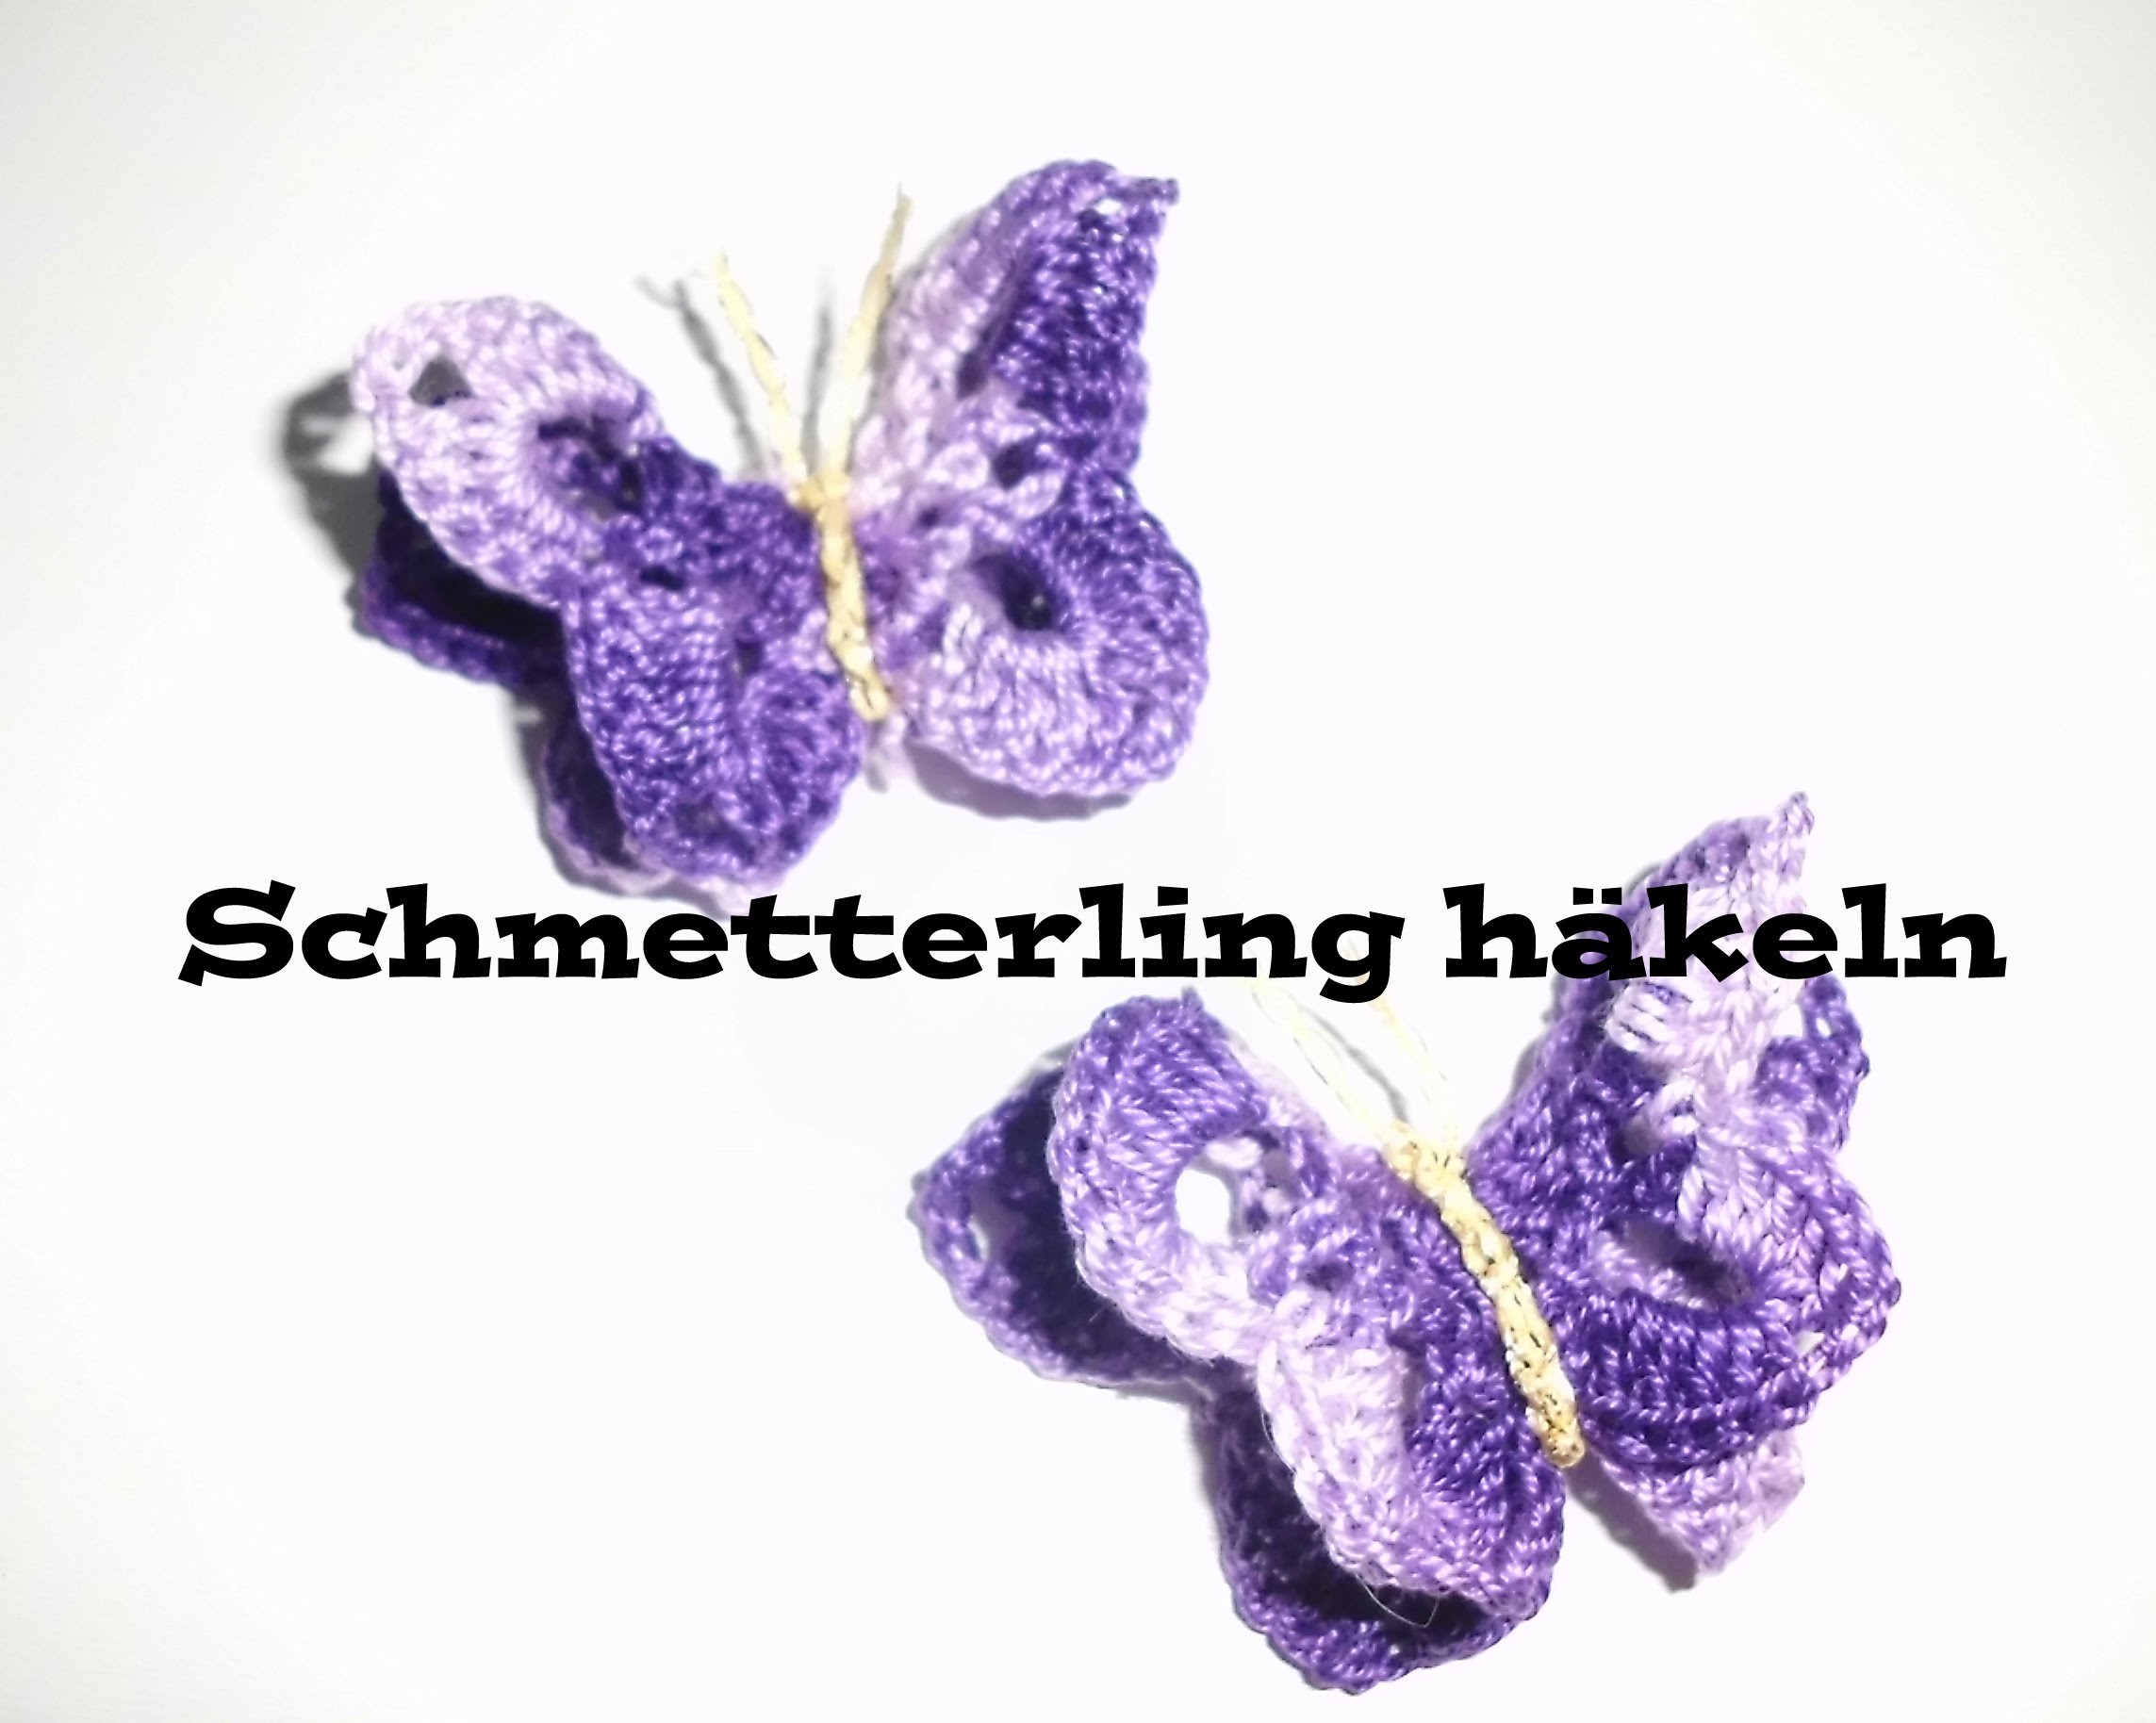 3D Schmetterling häkeln - Applikation oder Tischdeko häkeln